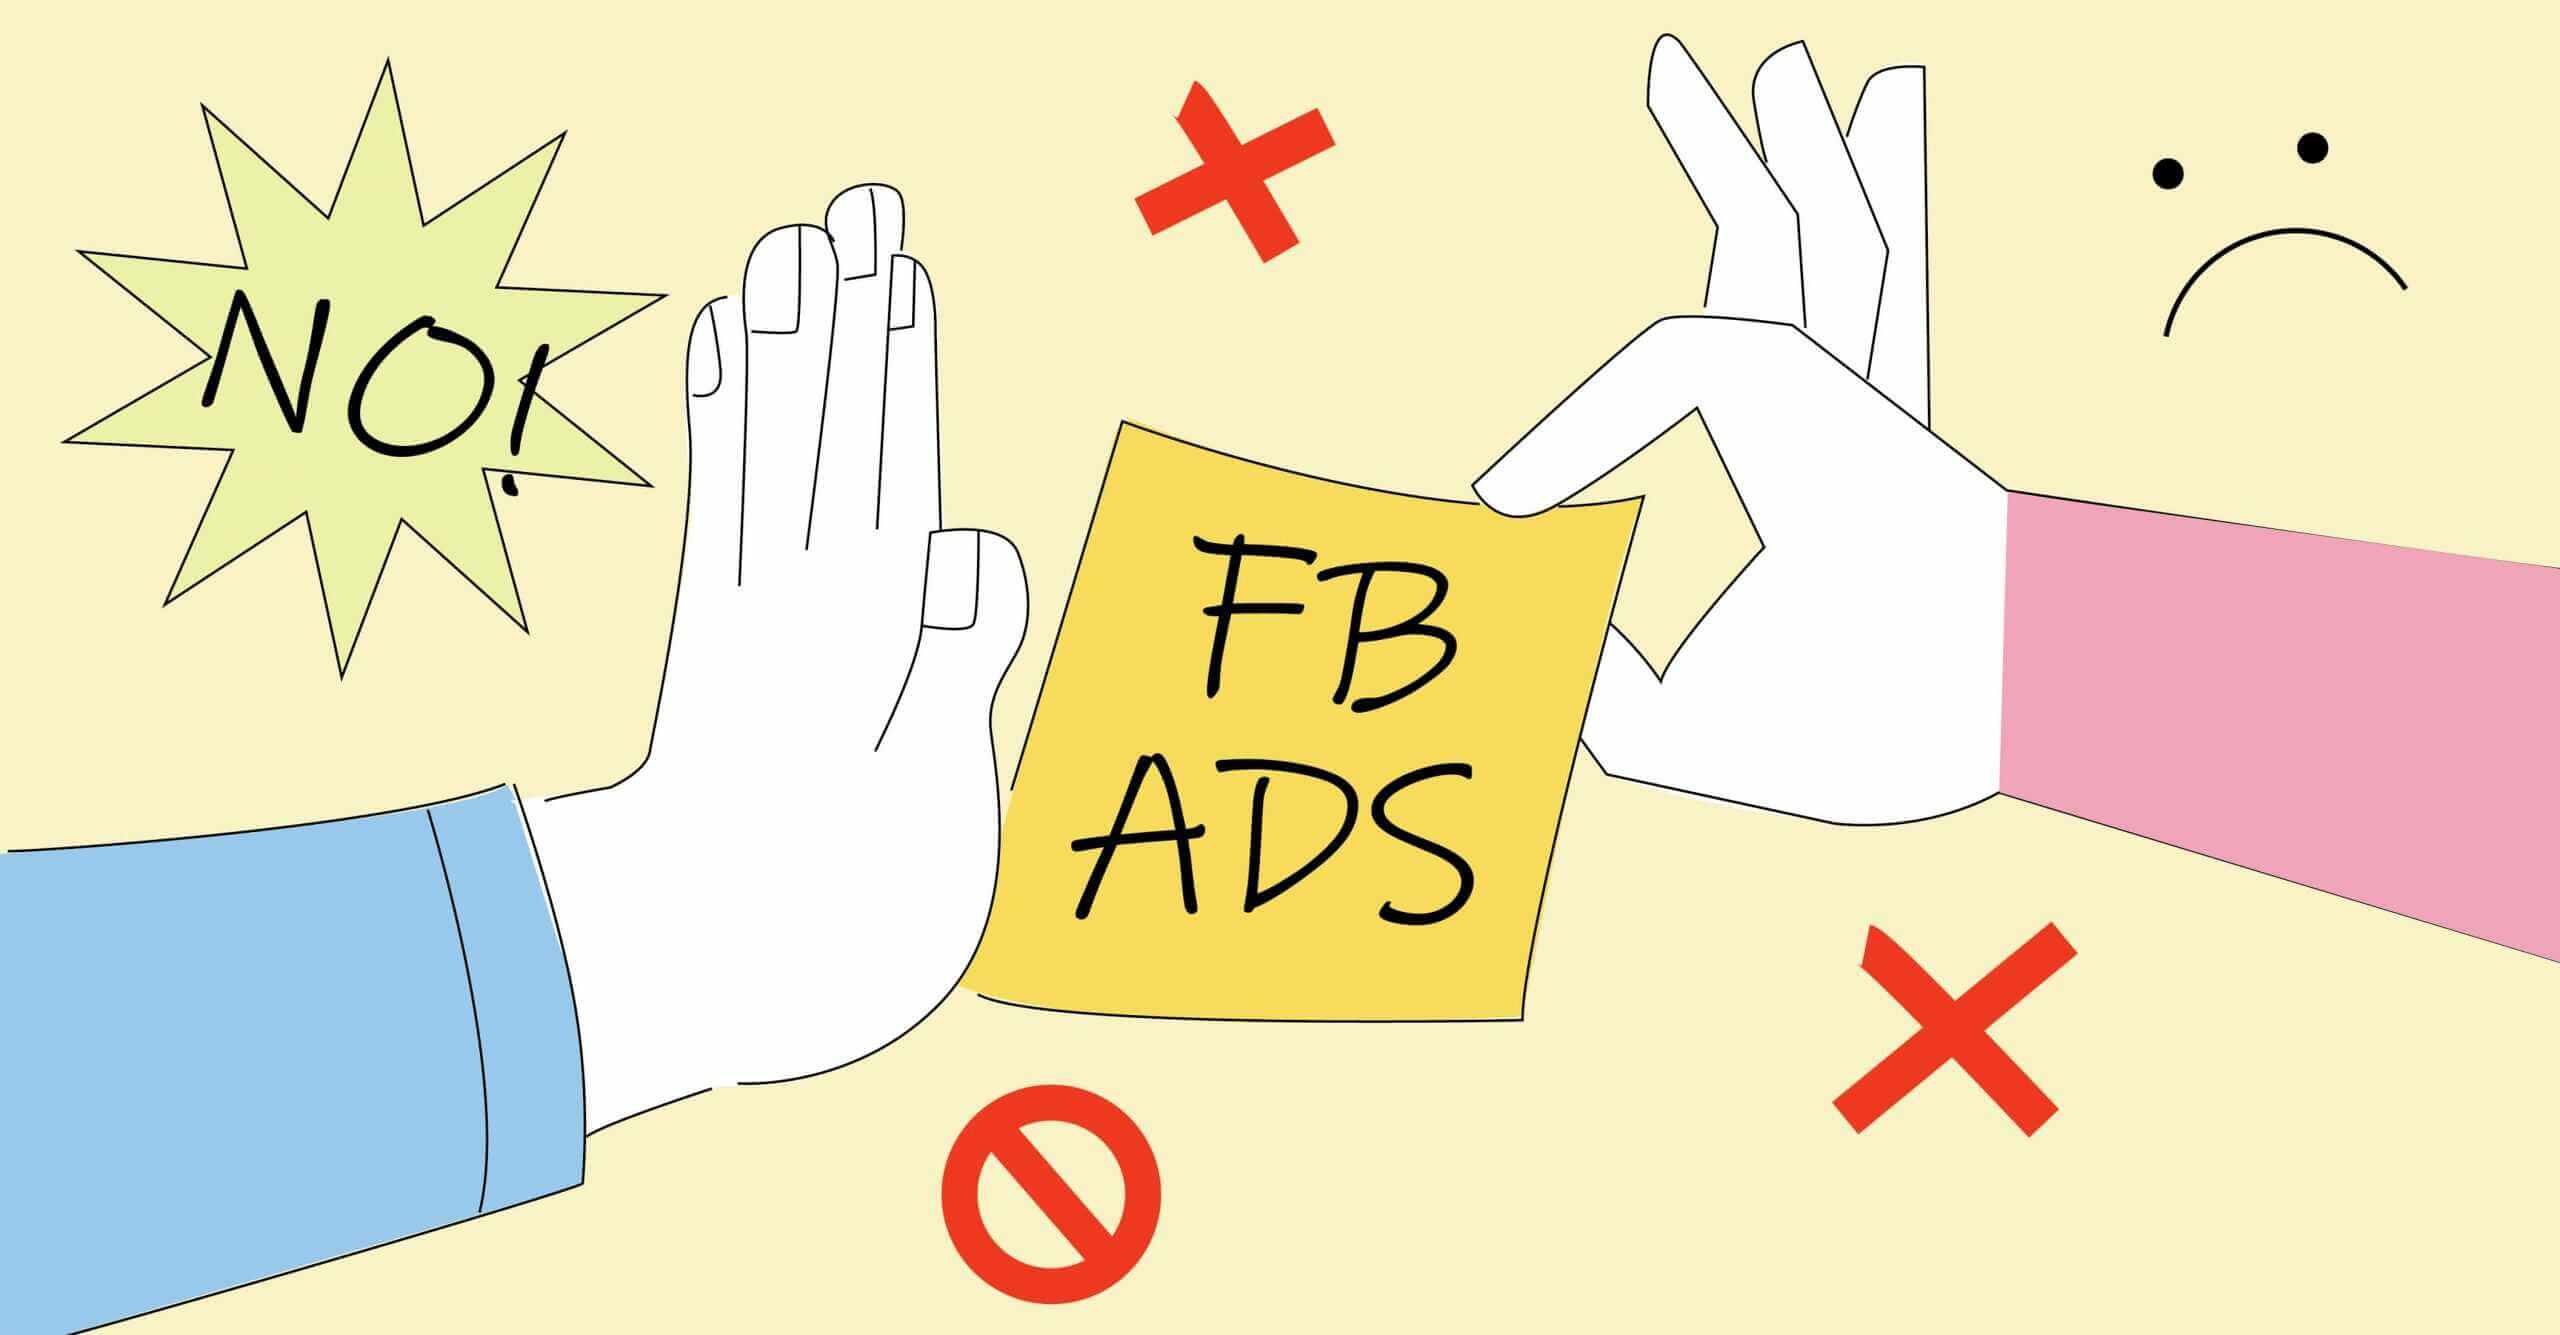 Quảng cáo FB xét duyệt lâu là điều mà bất kỳ nhà chạy quảng cáo fb nào cũng sẽ trải qua